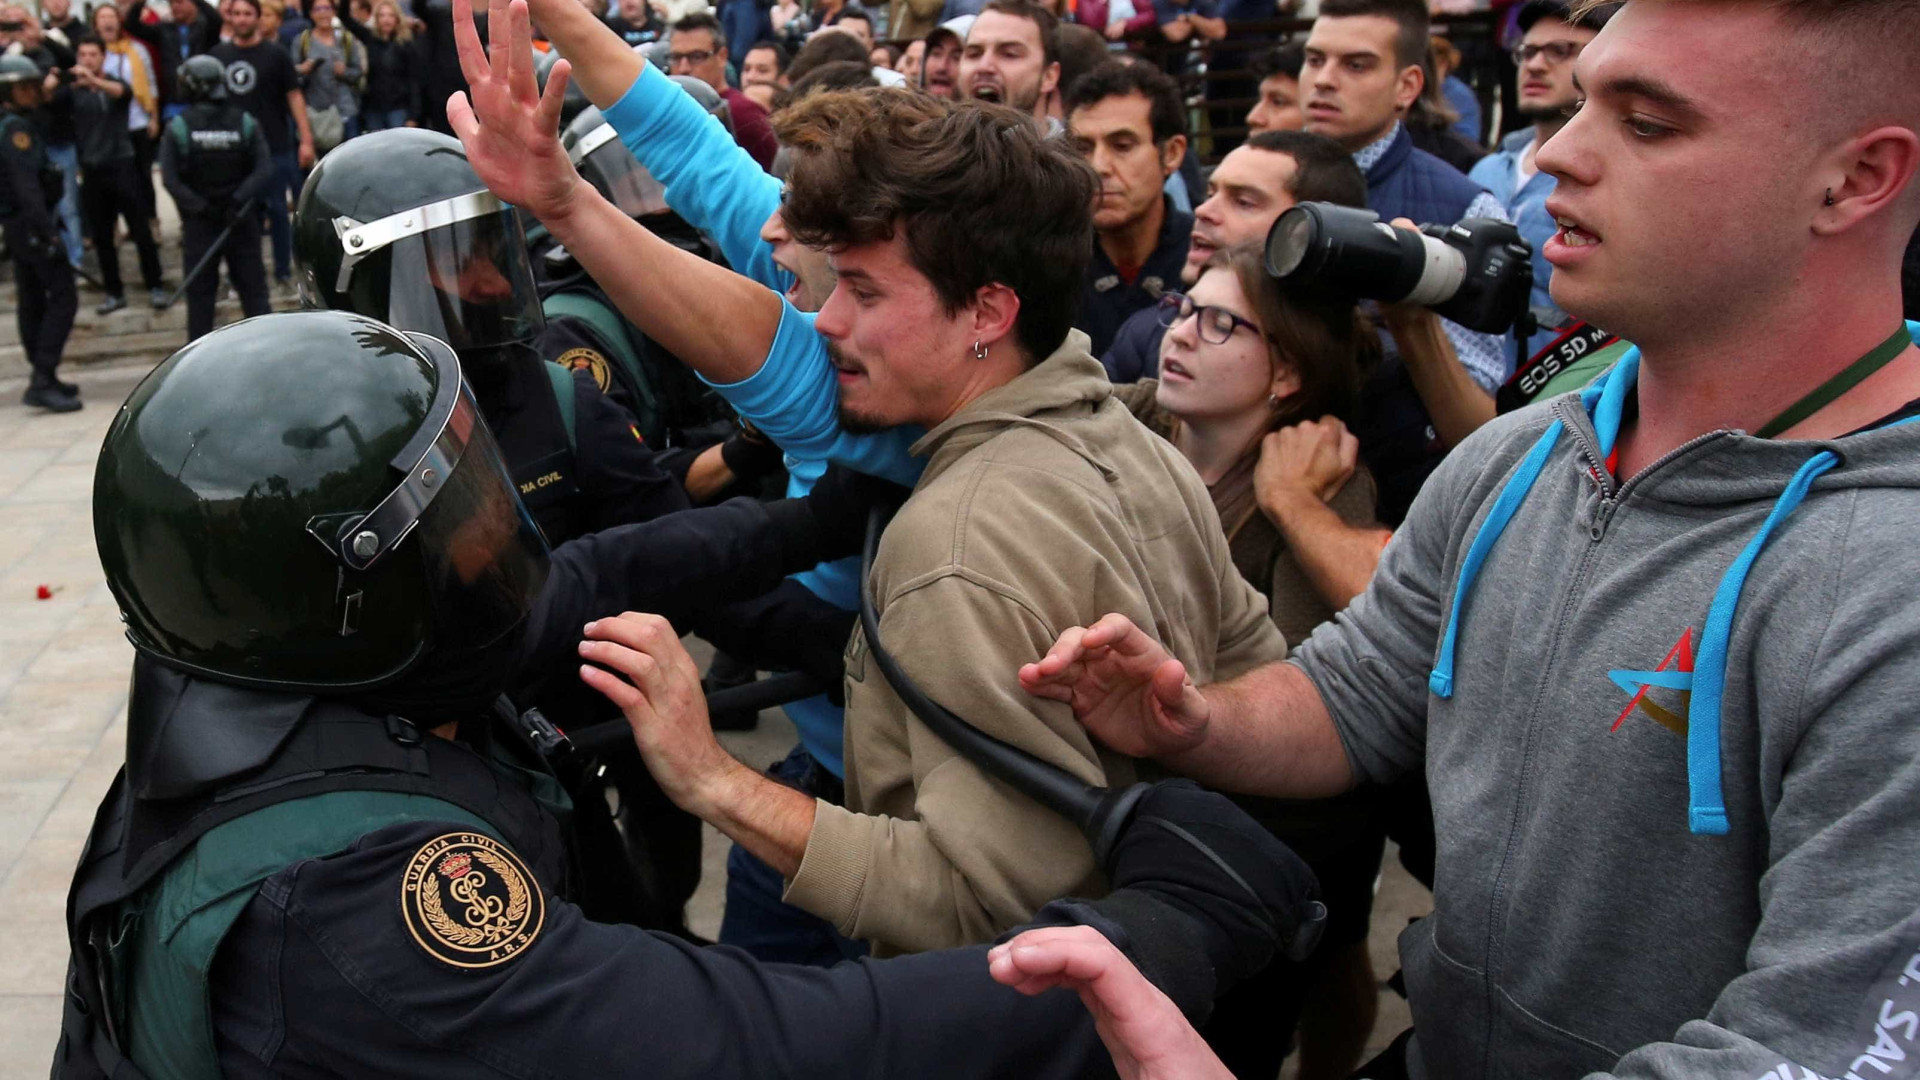 Vídeo denuncia violência policial em referendo na Catalunha